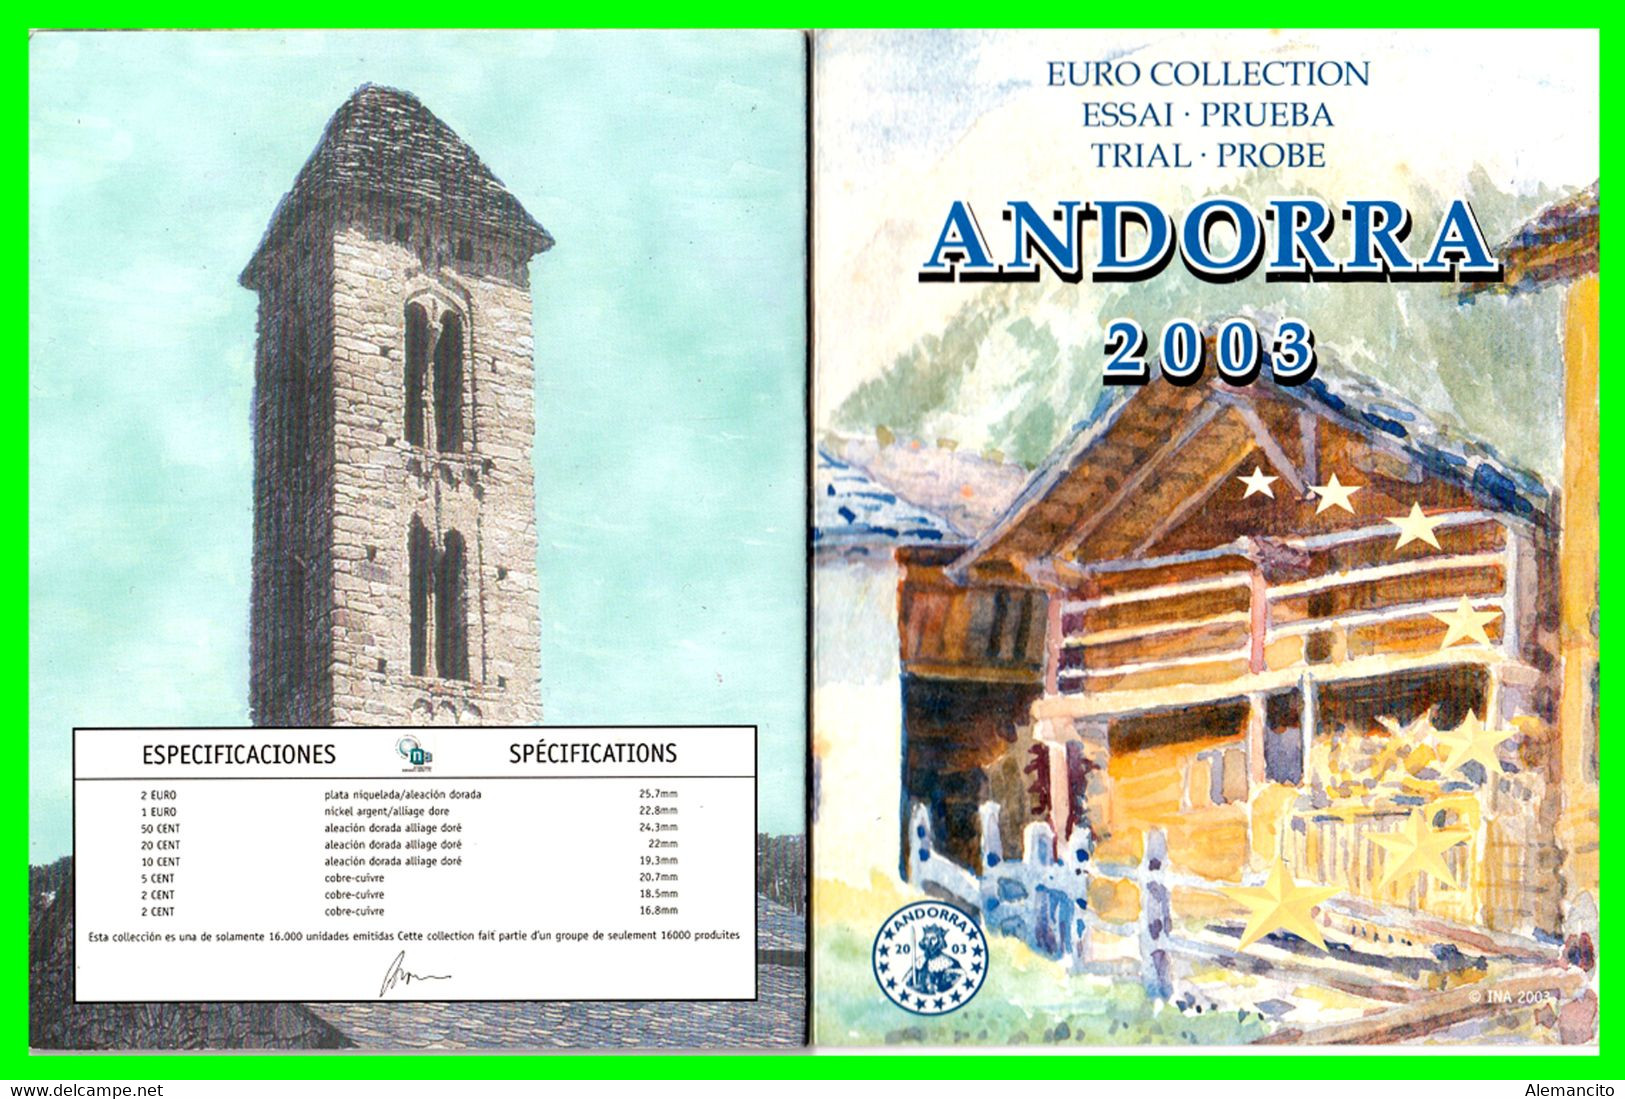 ANDORRA ( EUROPA ) CARTERA CON LA SERIE DE EUROS EN PRUEBA DEL AÑO 2003 - Andorra